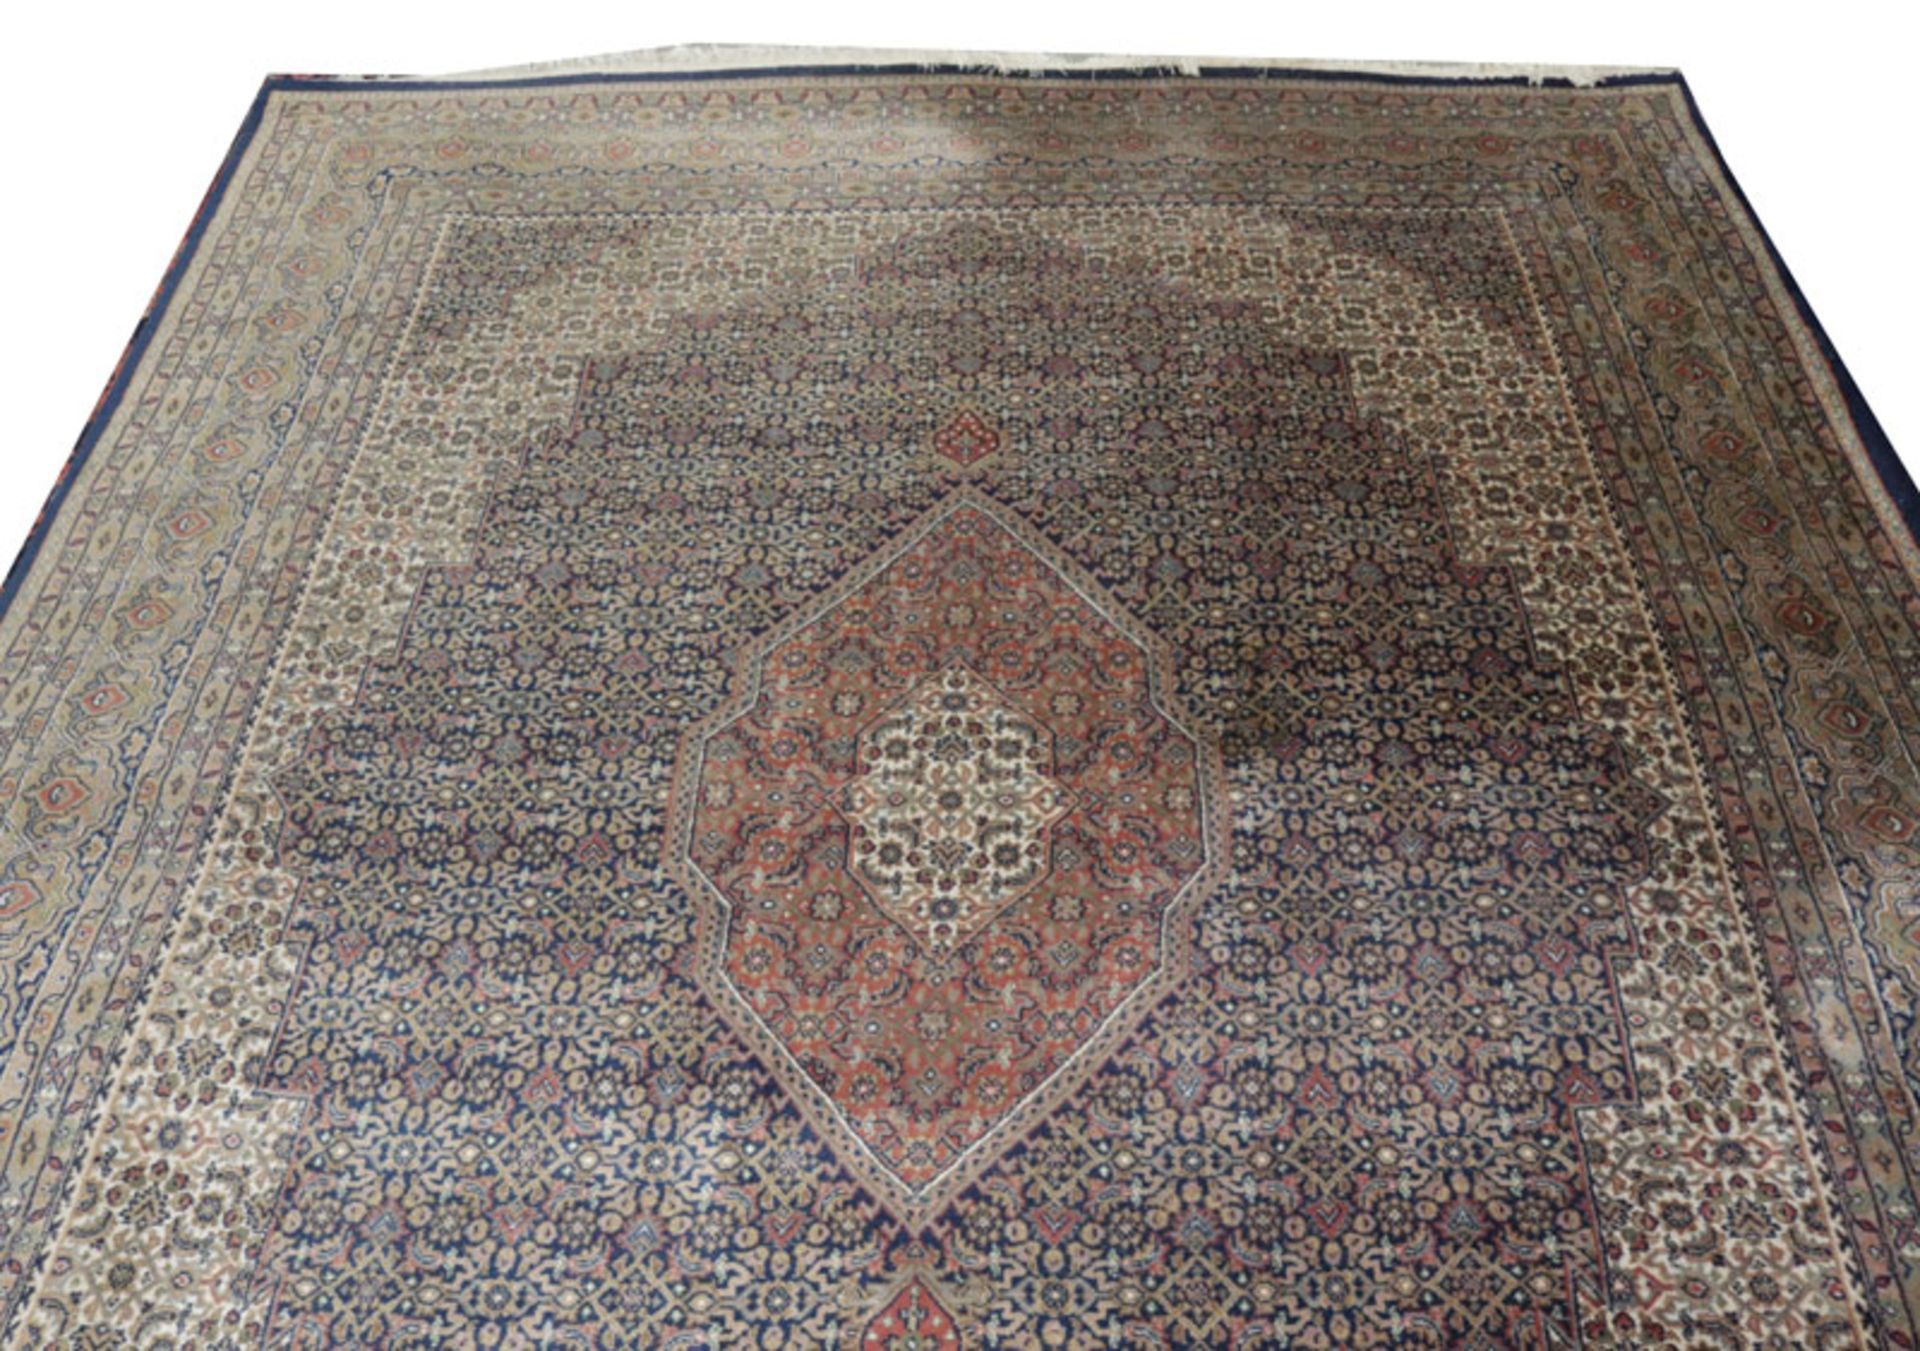 Teppich, Bidjar, blau/beige/bunt, 310 cm x 245 cm, Gebrauchsspuren, Abholung oder Versand per